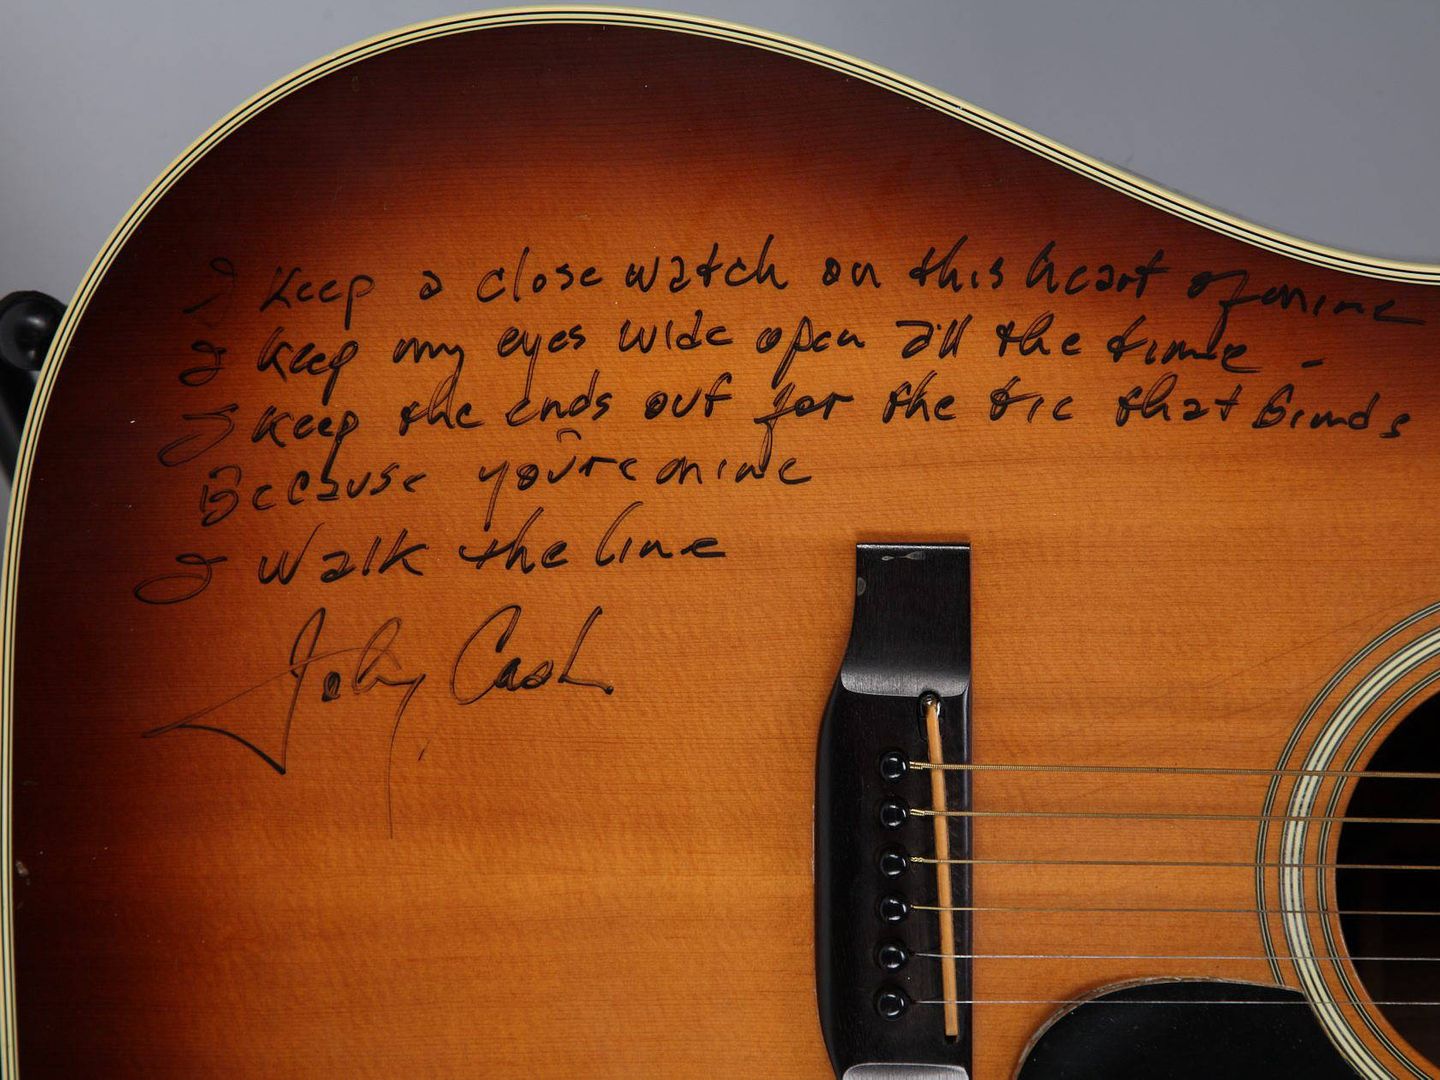 Fotografía cedida por la casa de subastas JShaan Kokin/Julienis de una guitarra firmada por el músico estadounidense Johnny Cash y subastada en 2010.